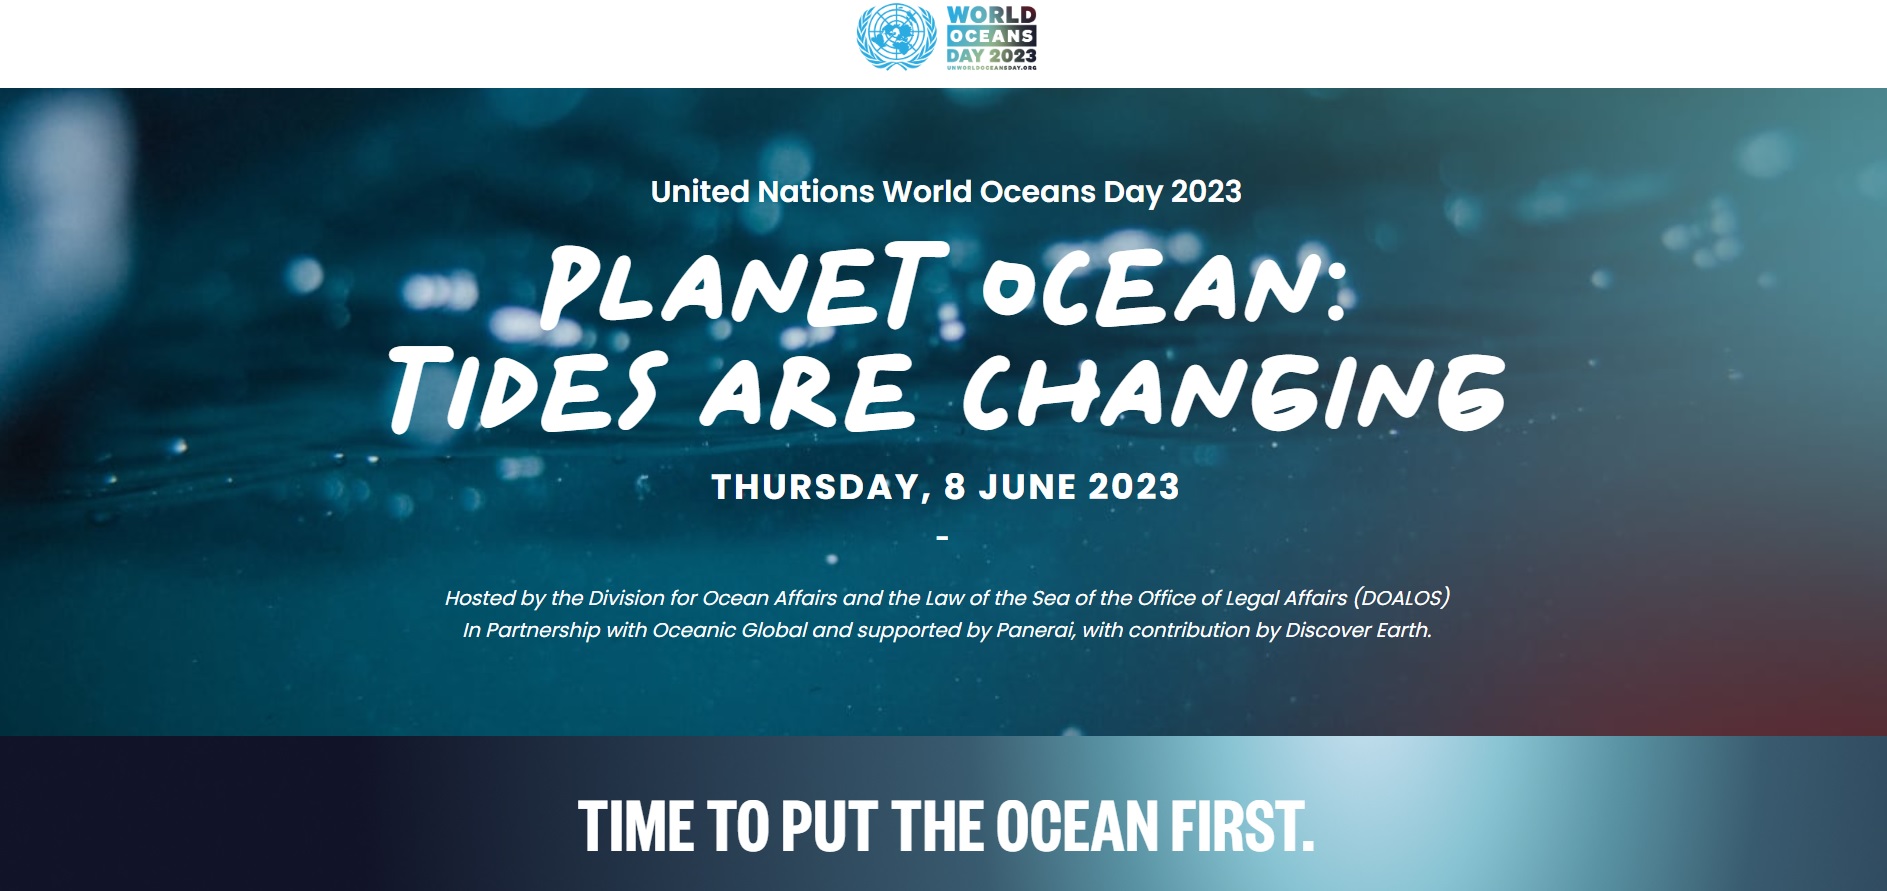 World ocean day 2023 1a